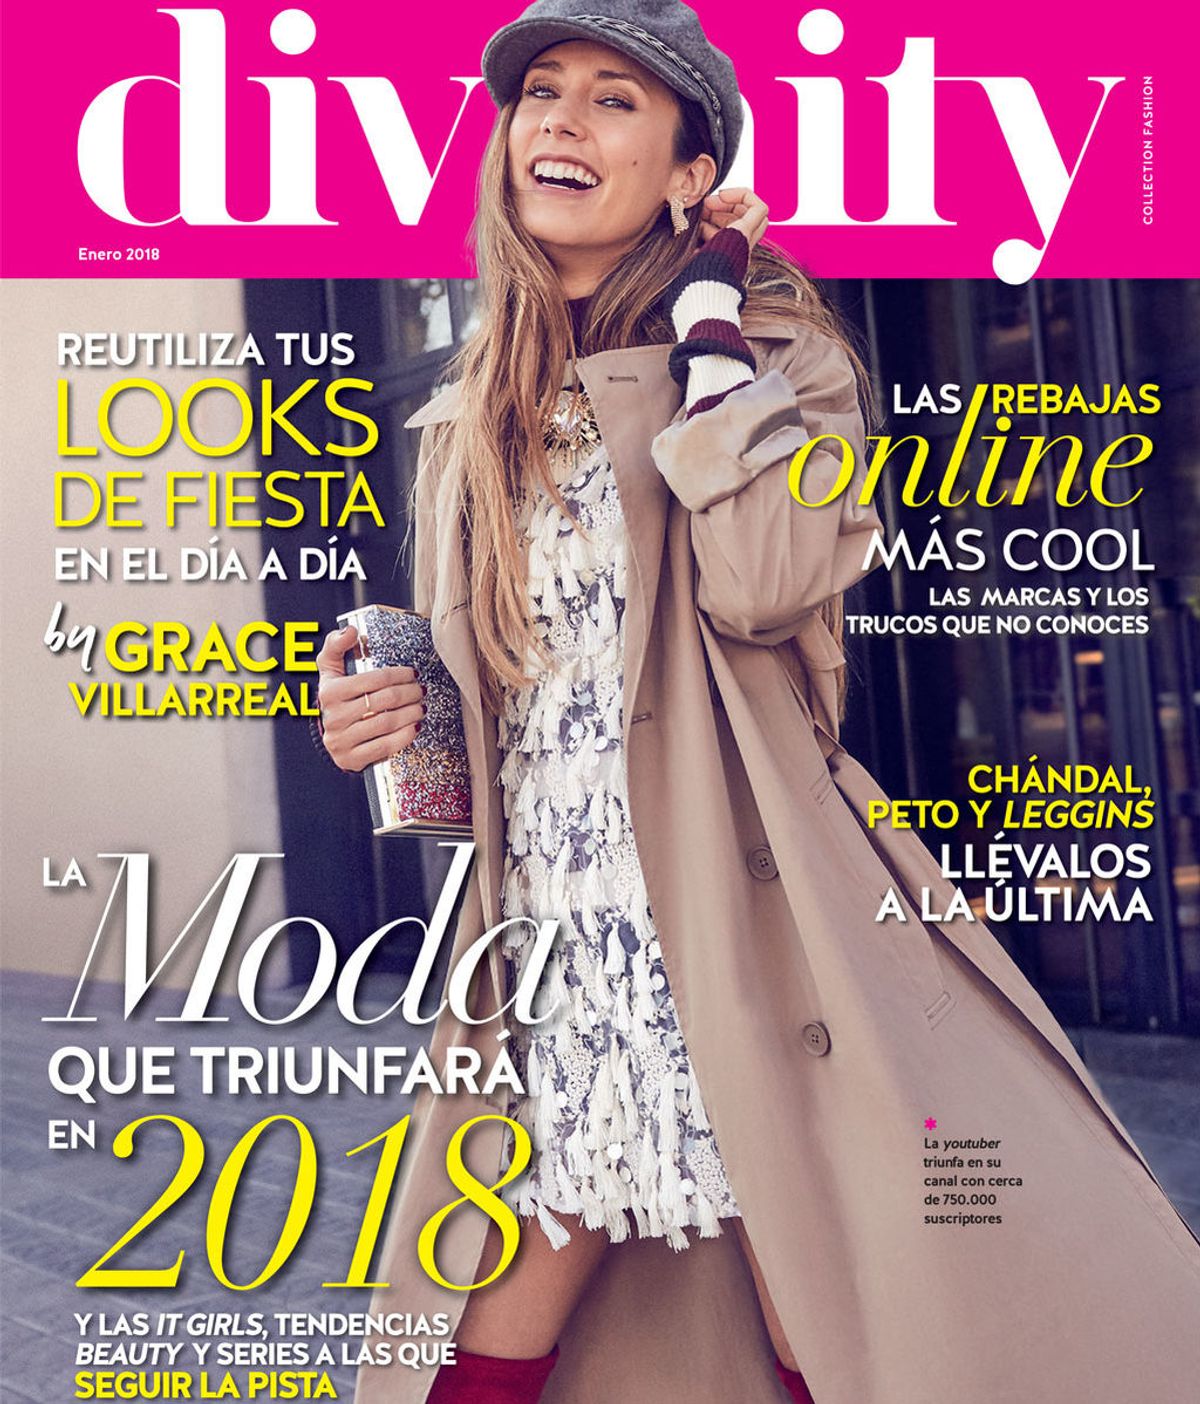 Portada revista divinity enero 2018